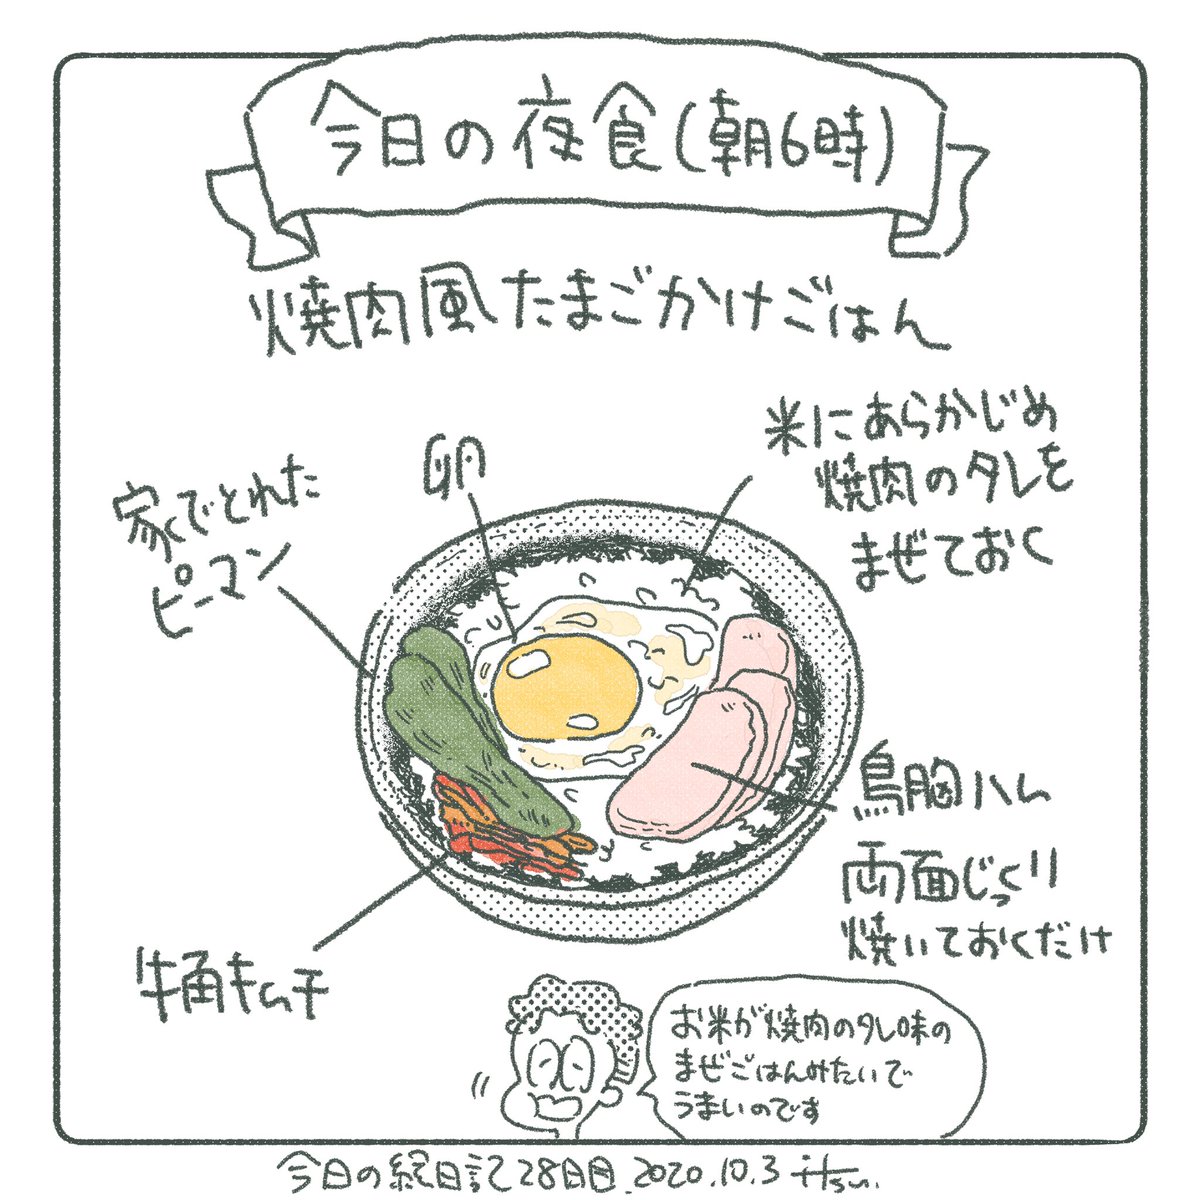 今日は4:00起き(昼寝2回)
早起きするとお腹すきませんかね。
Egg rice for breakfast.
#1日1絵 #絵日記 